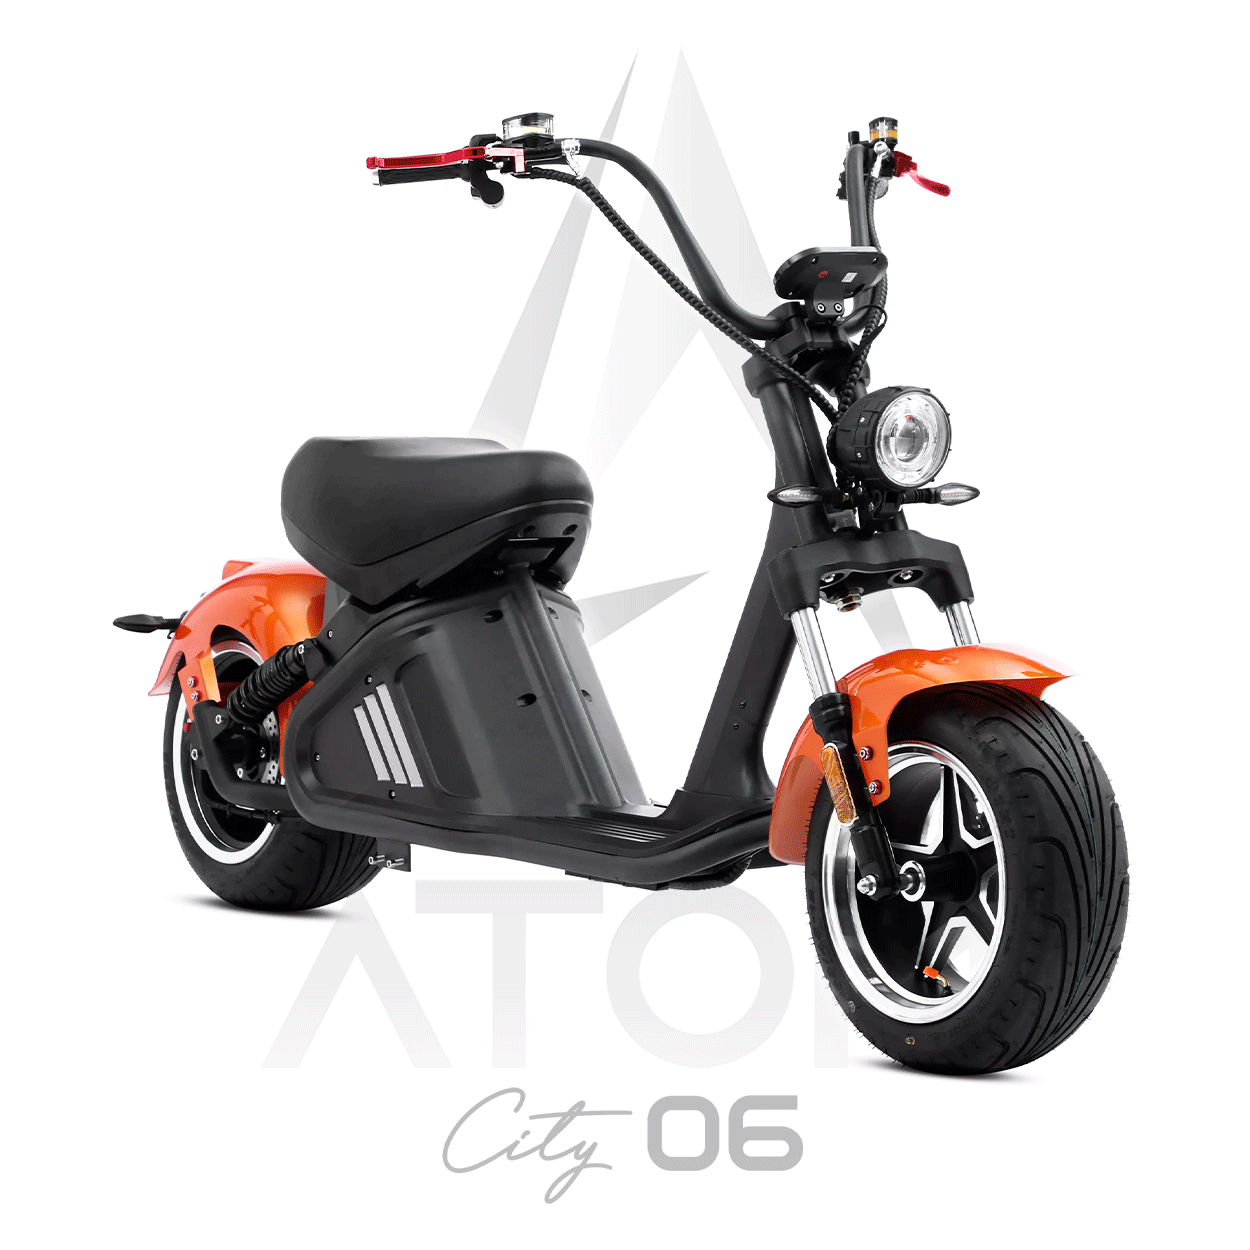 Scooter électrique, Atom City 06 | 3000 W | 50 cc - Atom Motors